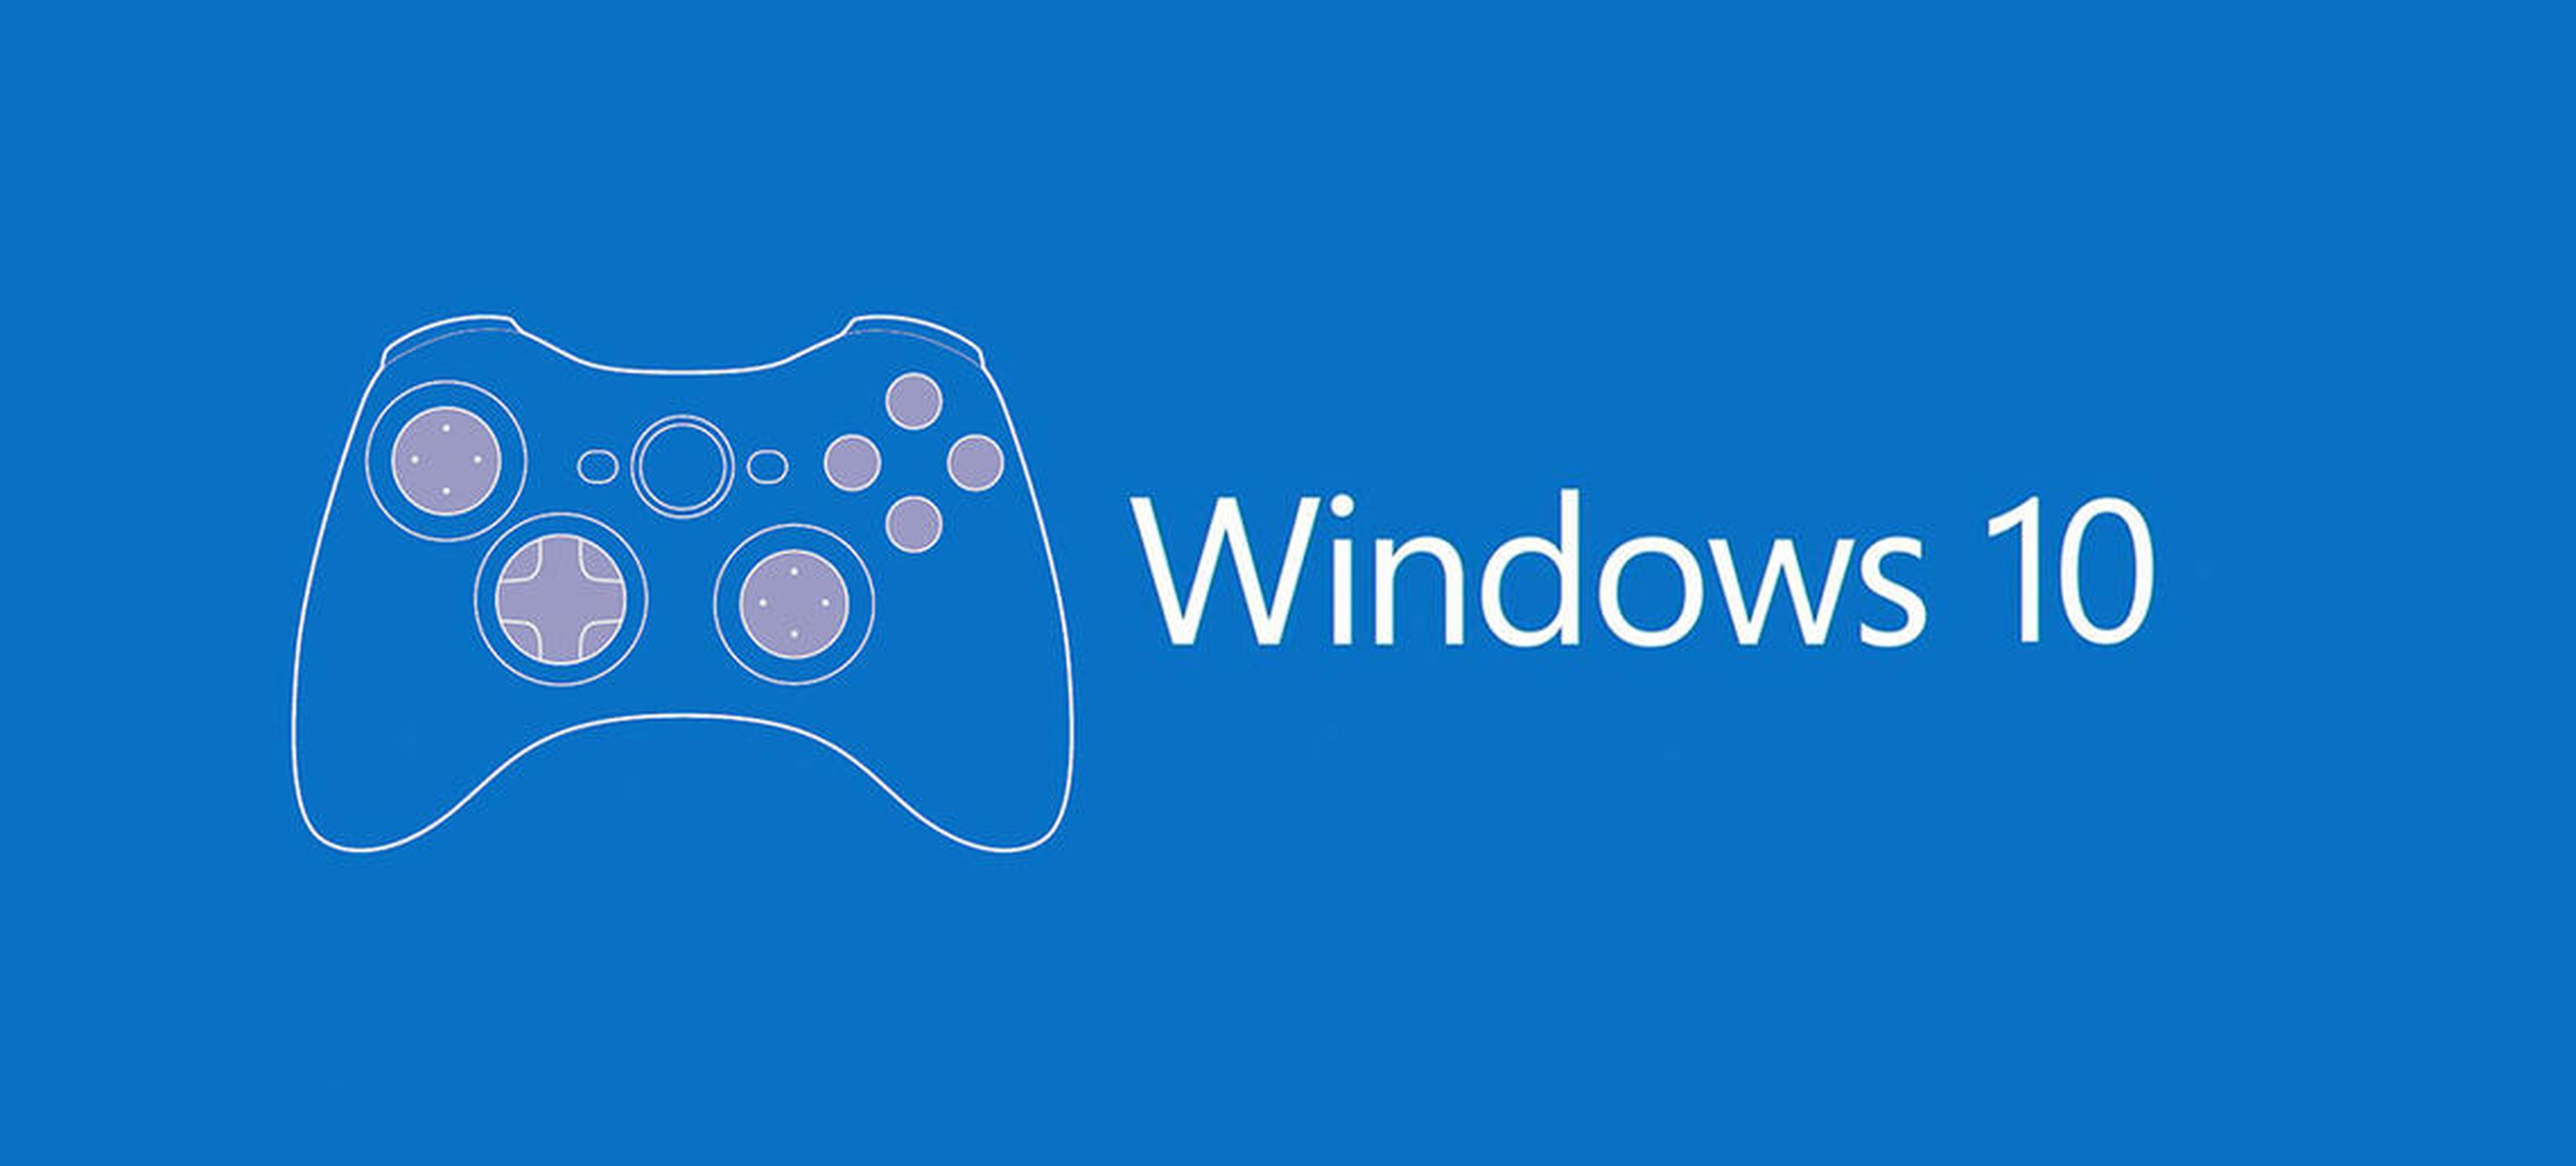 Microsoft prepara un evento sobre Xbox One y Windows 10